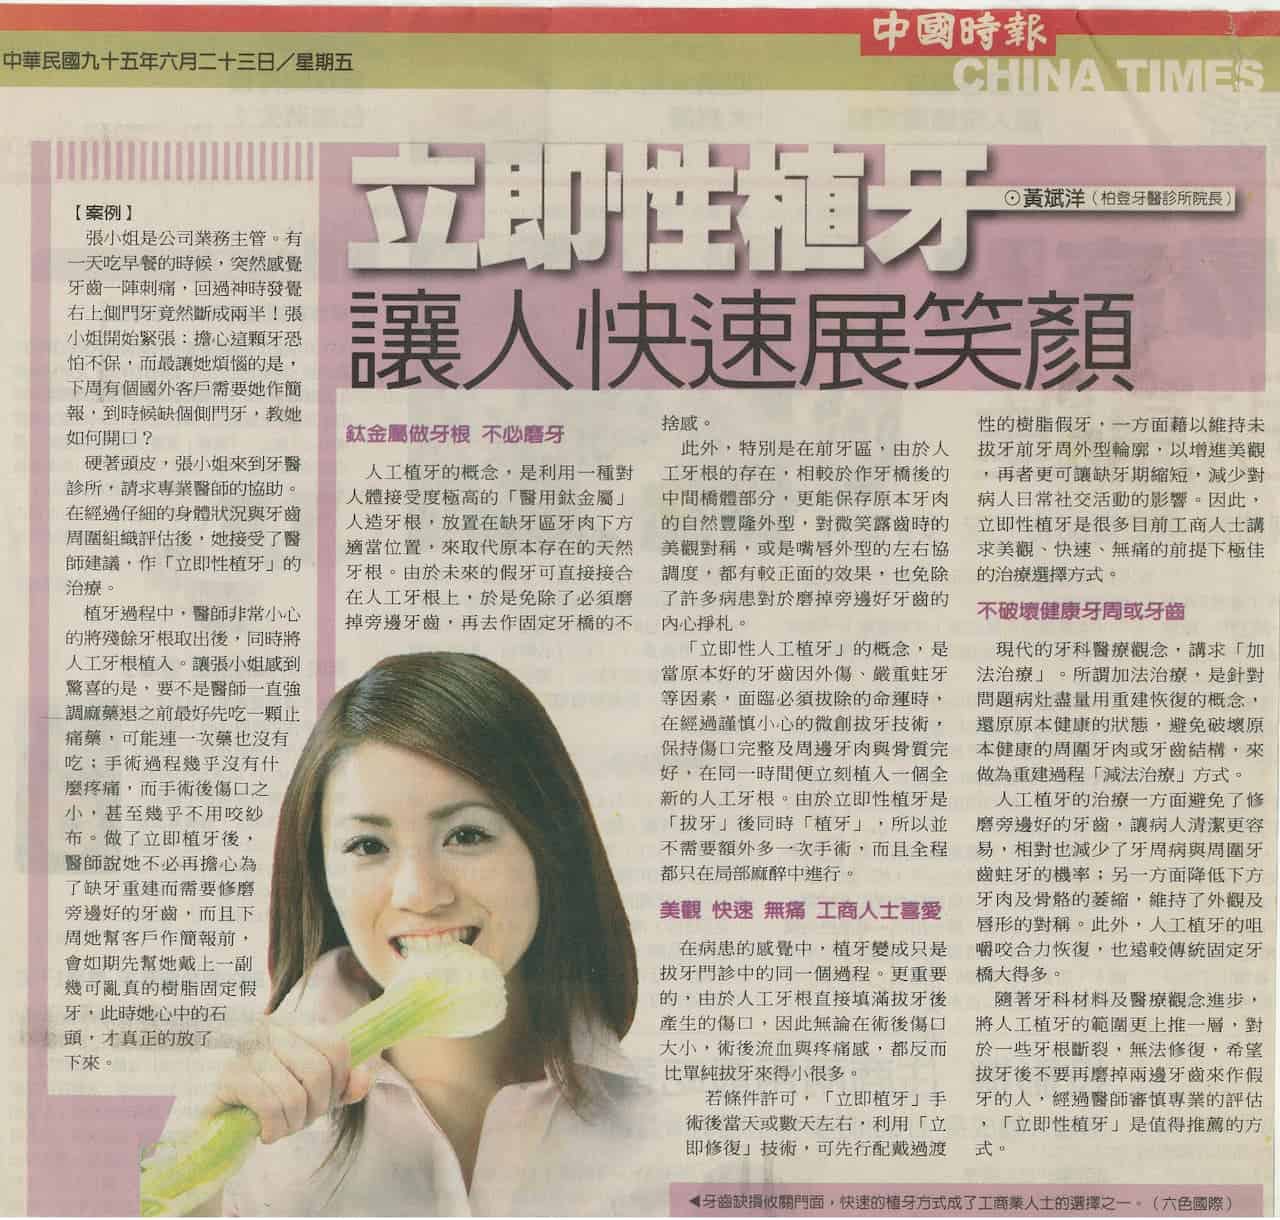 立即性植牙讓人快速展笑顏-中國時報-柏登牙醫人工植牙知識